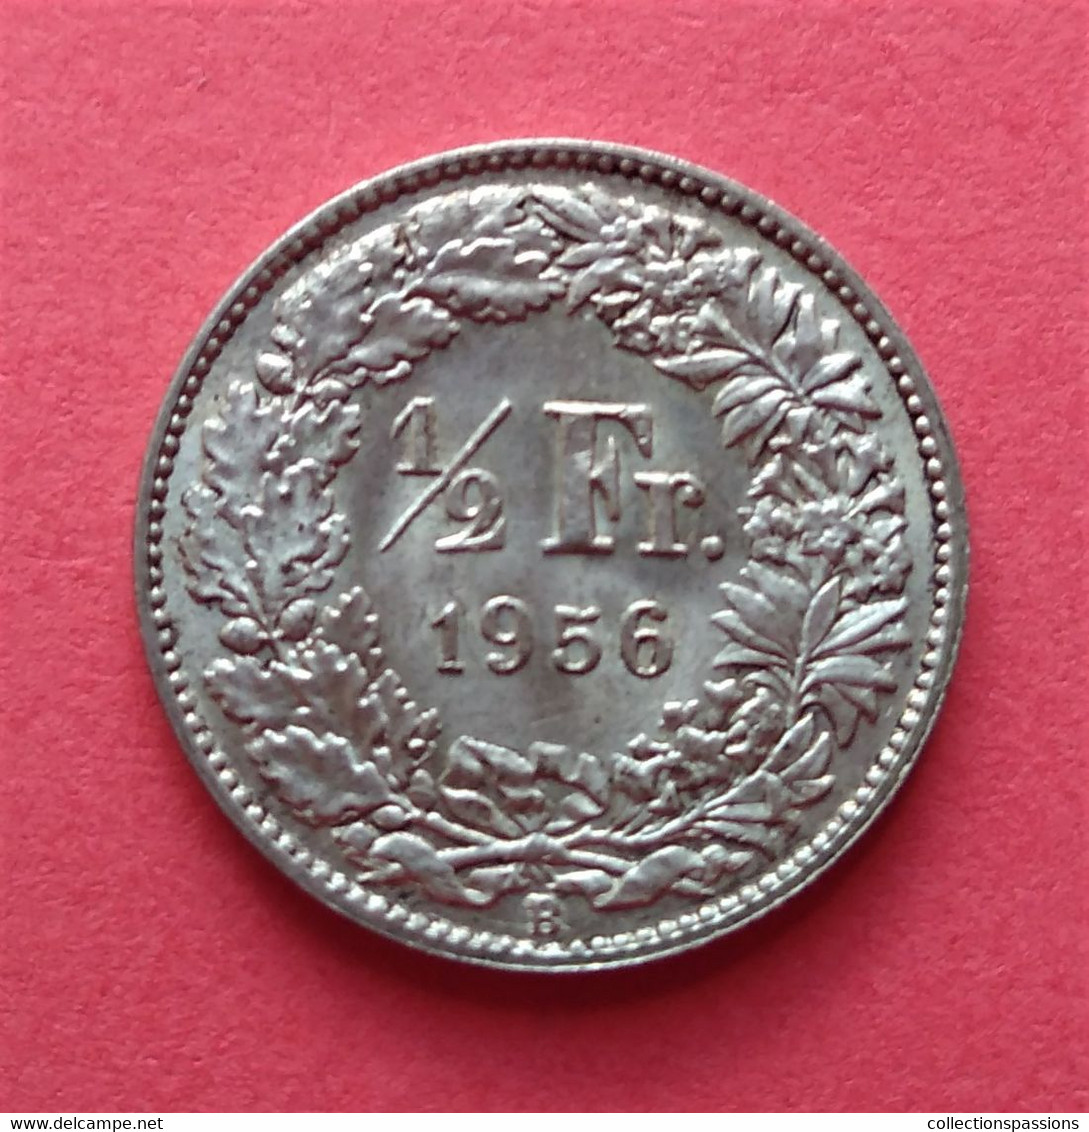 - SUISSE - 1/2 Franc - 1956 - Argent - 1/2 Franc